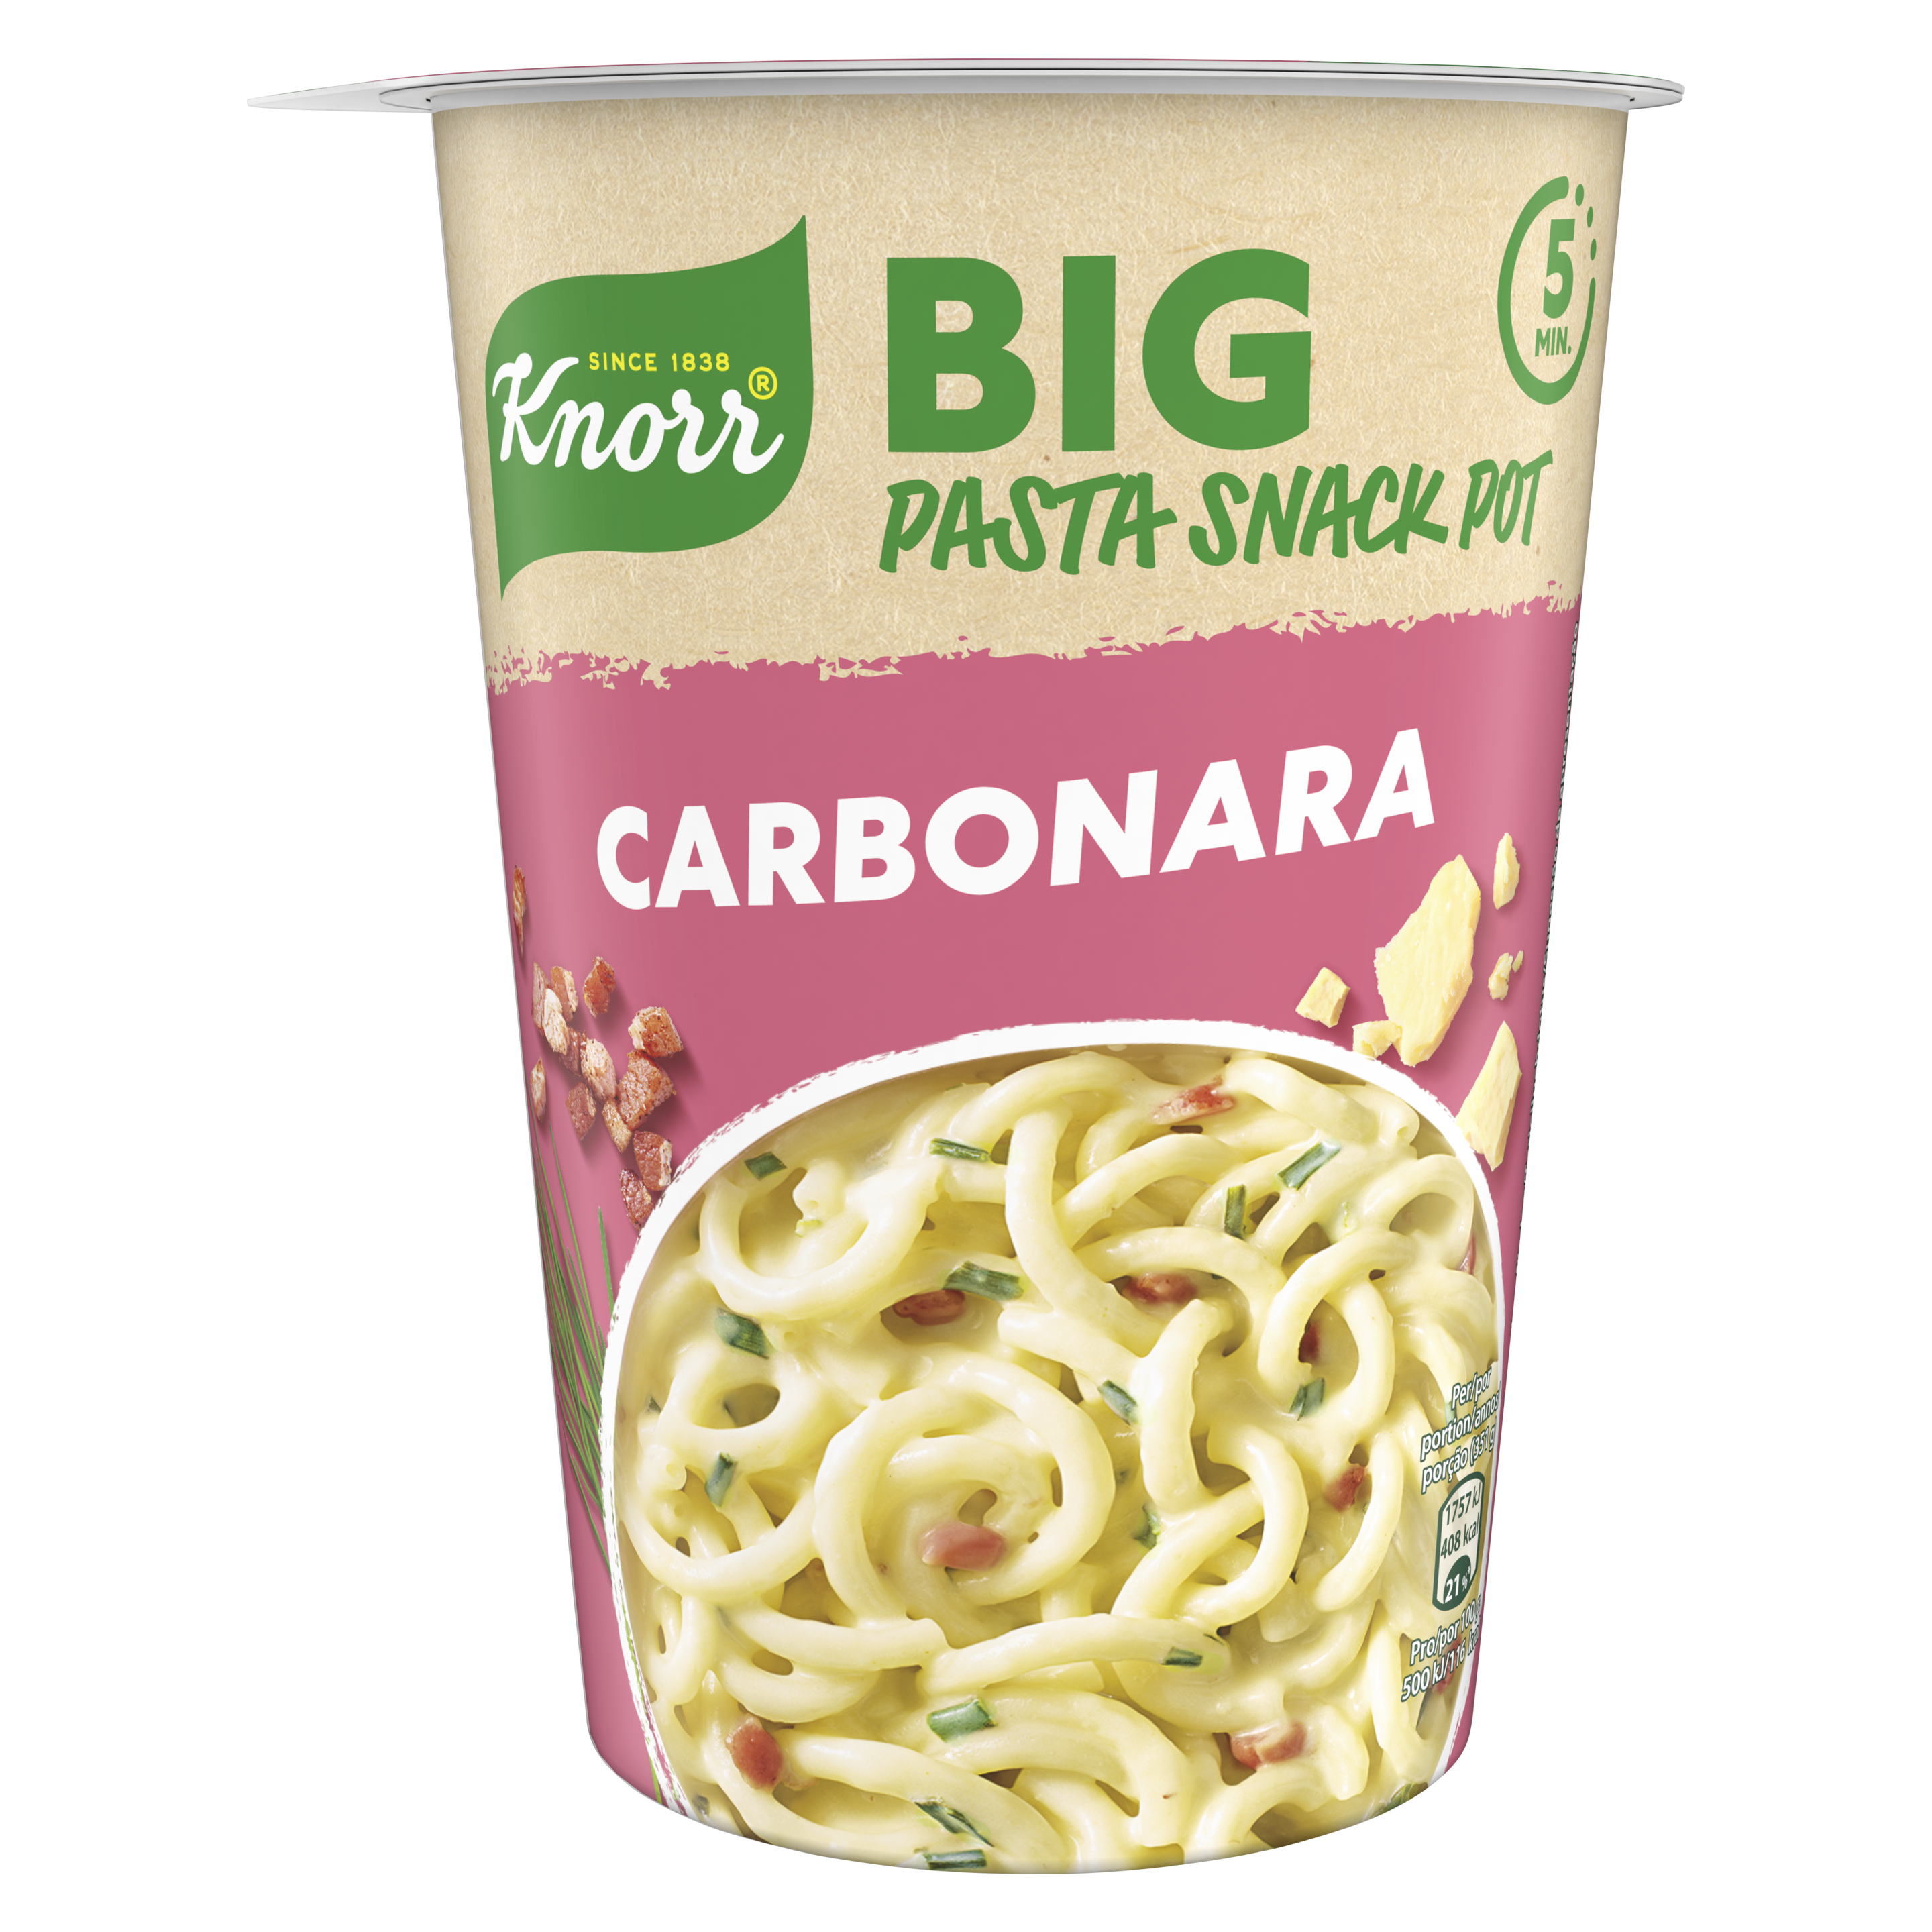 Big Pasta Snack Pot Carbonara